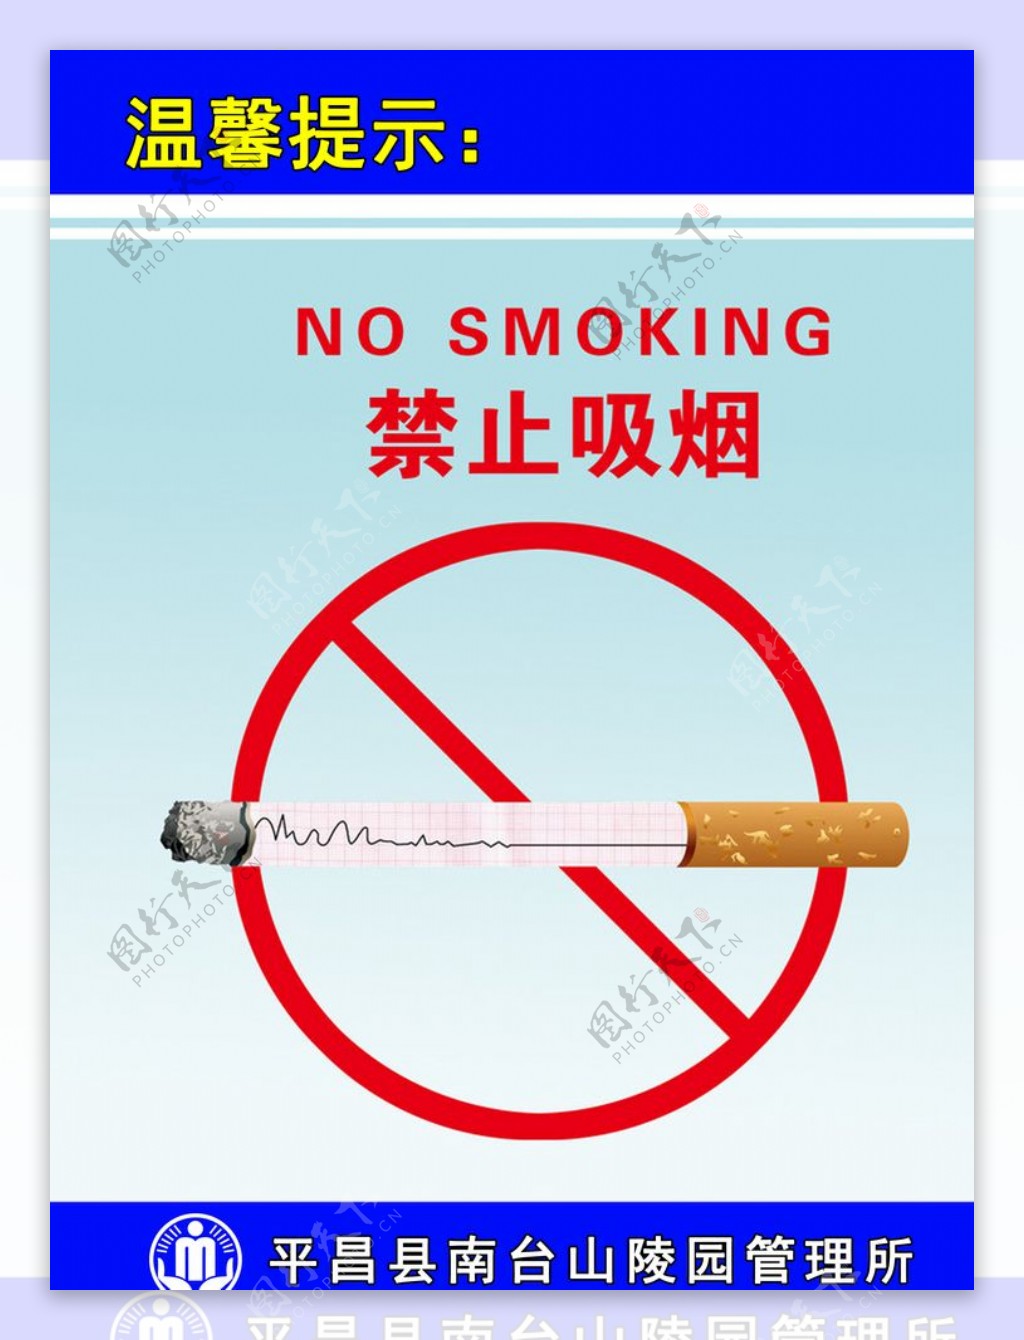 禁止吸烟标牌警示牌